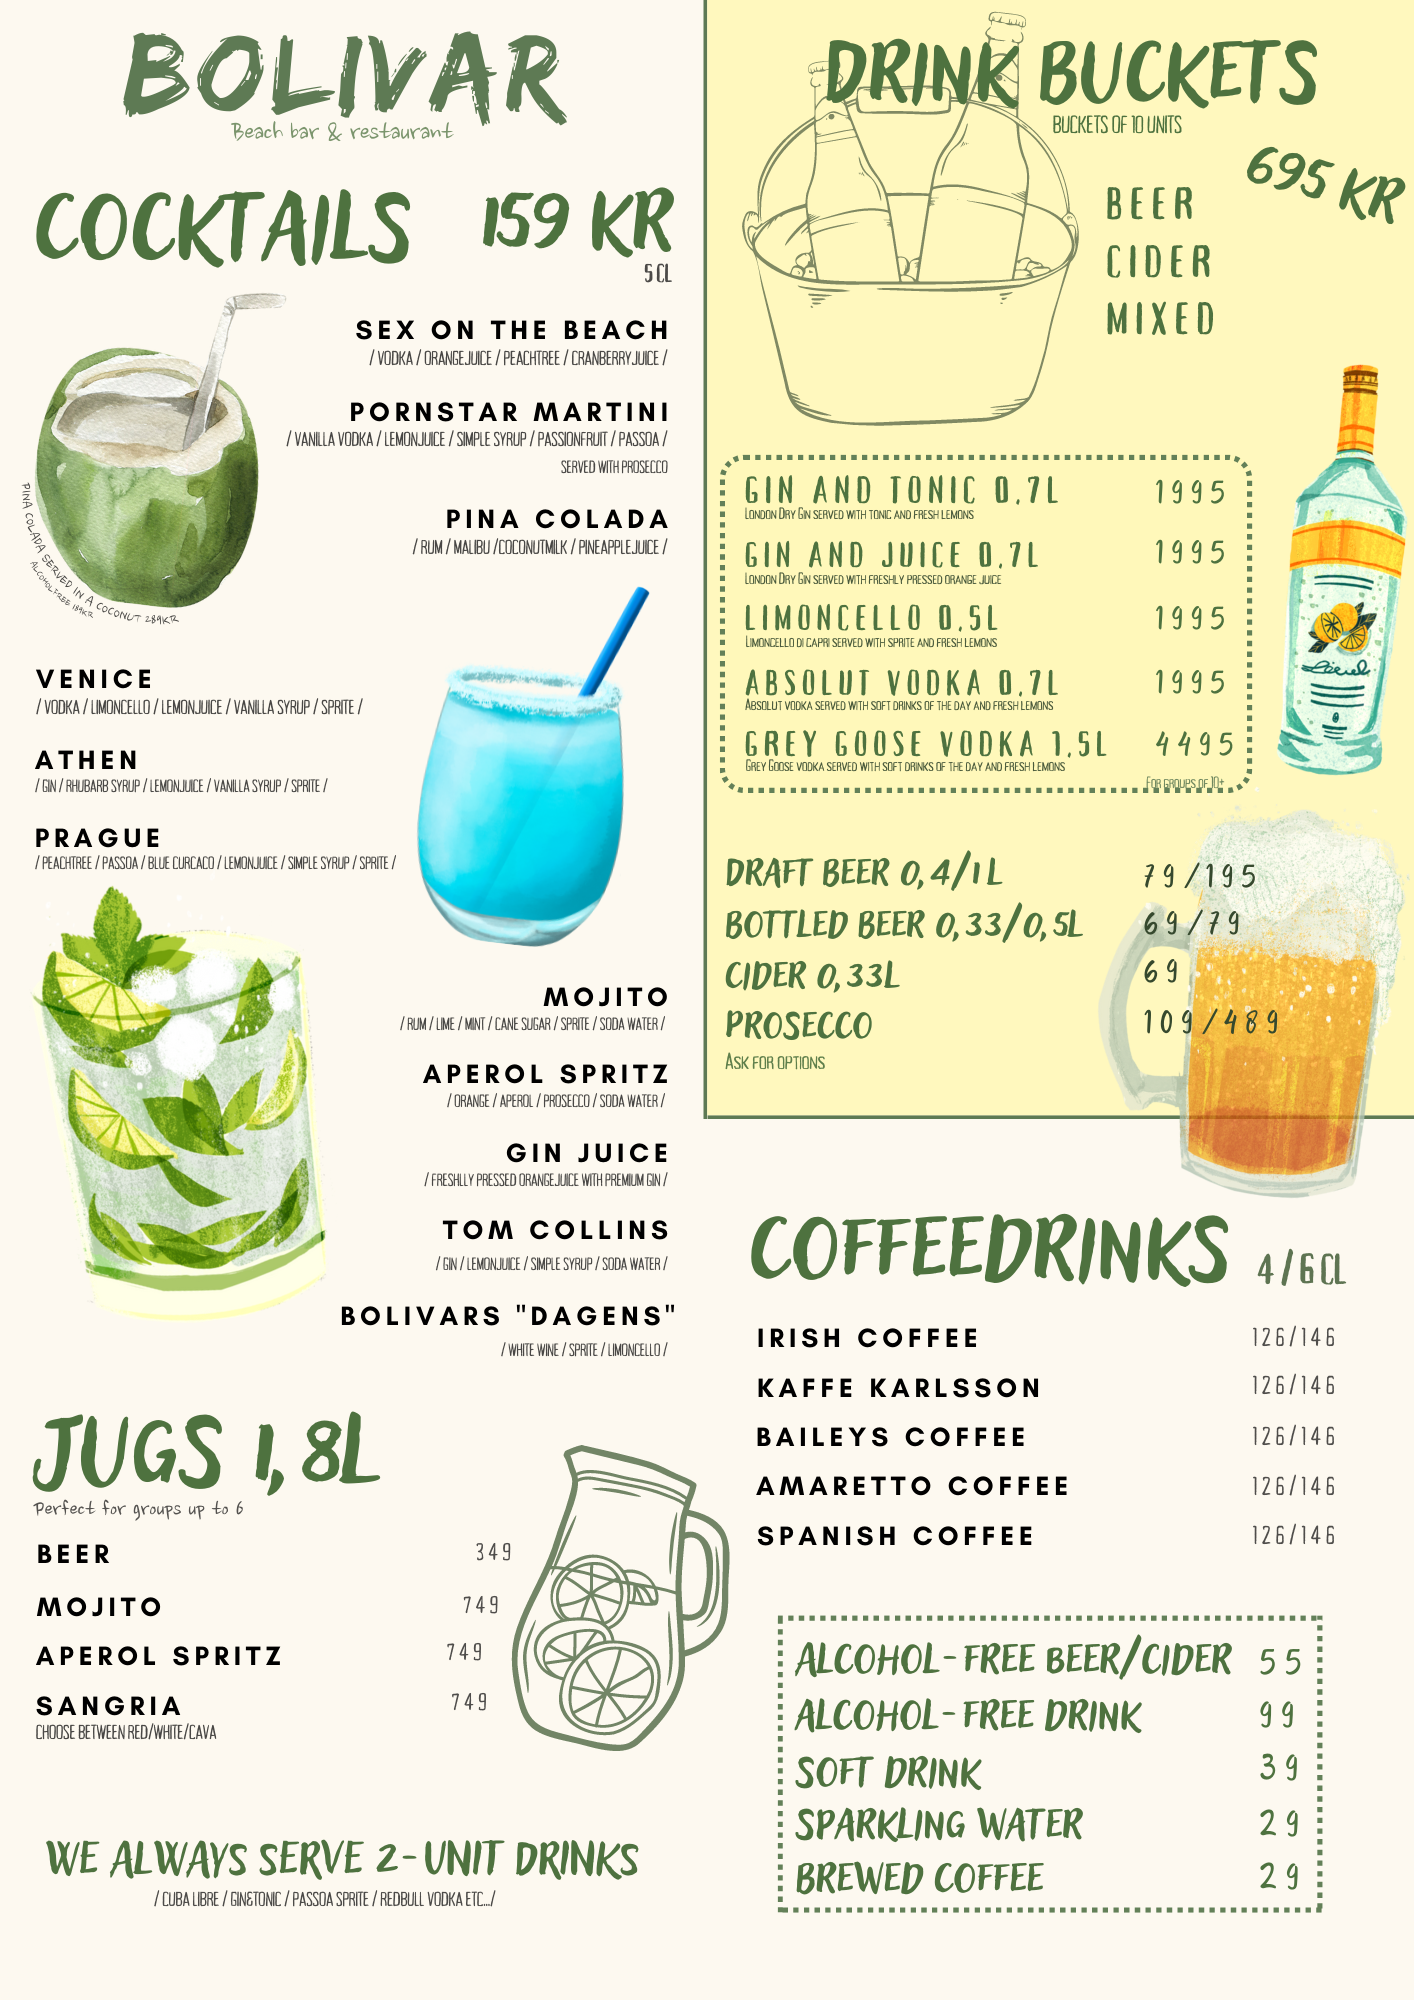 Svalkande dryck som drinkar, jugs, drinkbuckets eller kaffedrinkar? Här är vår drinkmeny...